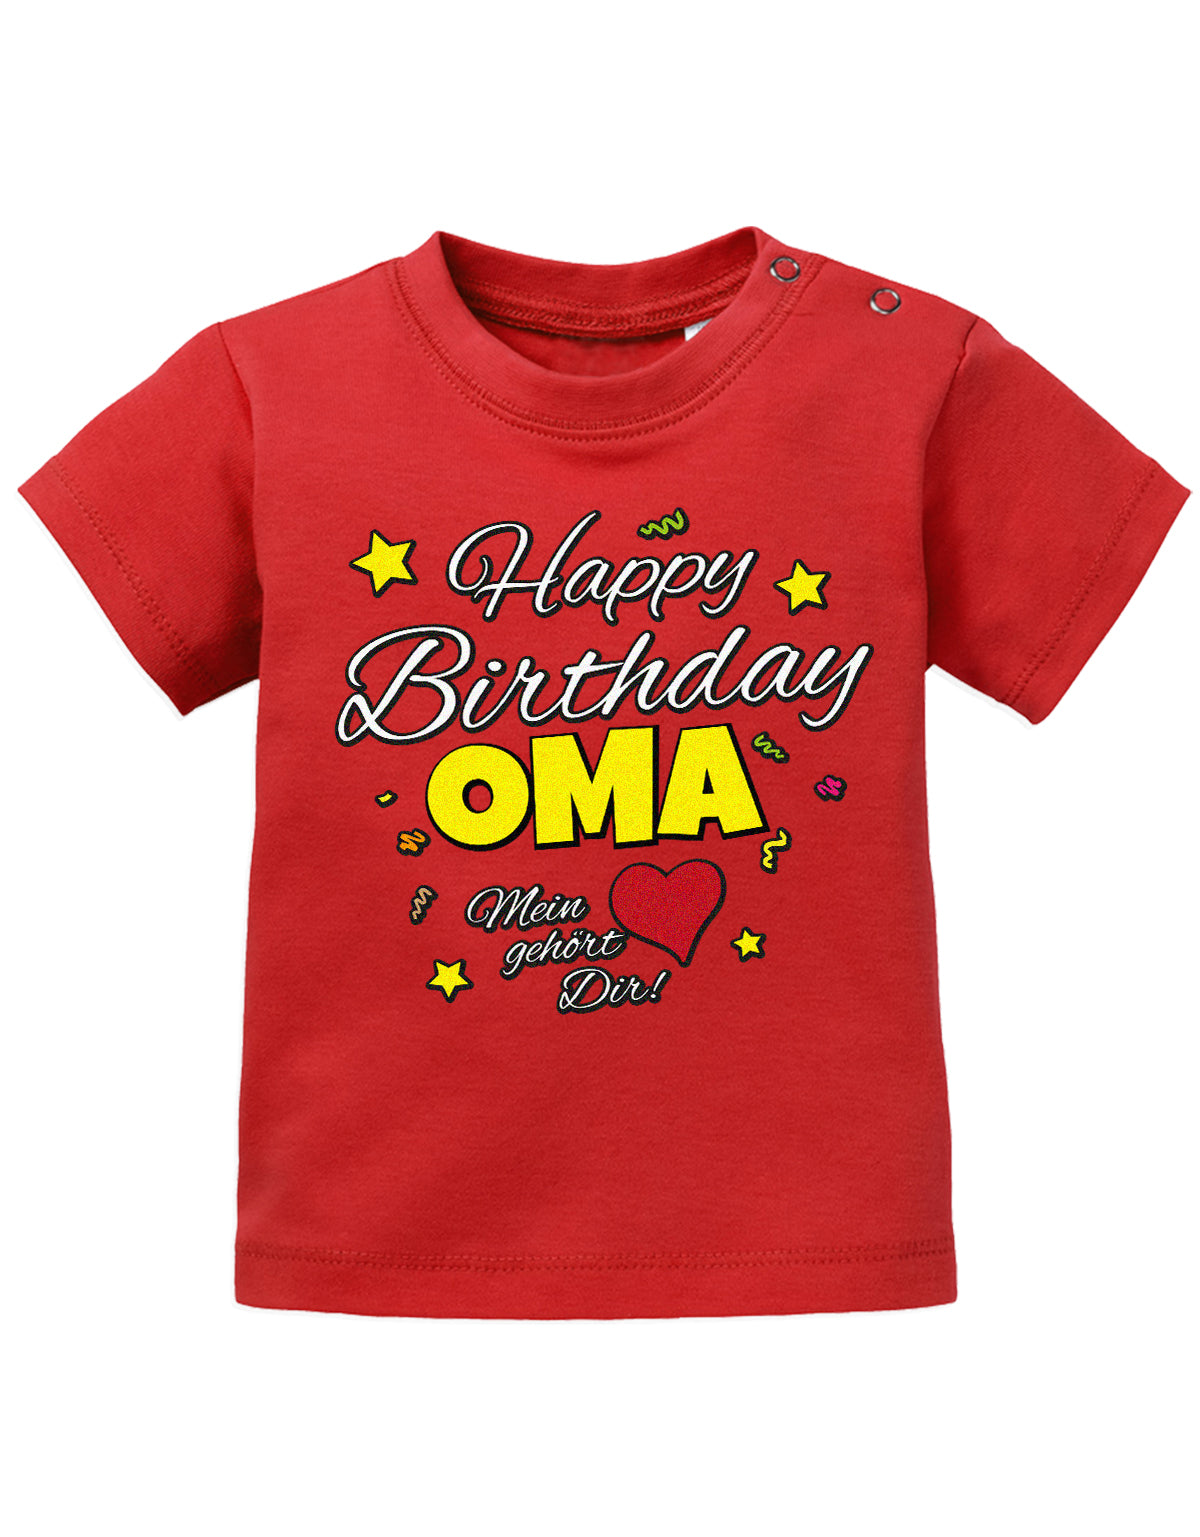 Oma Spruch Baby Shirt. Happy Birthday Oma, Mein Herz gehört dir. Rot